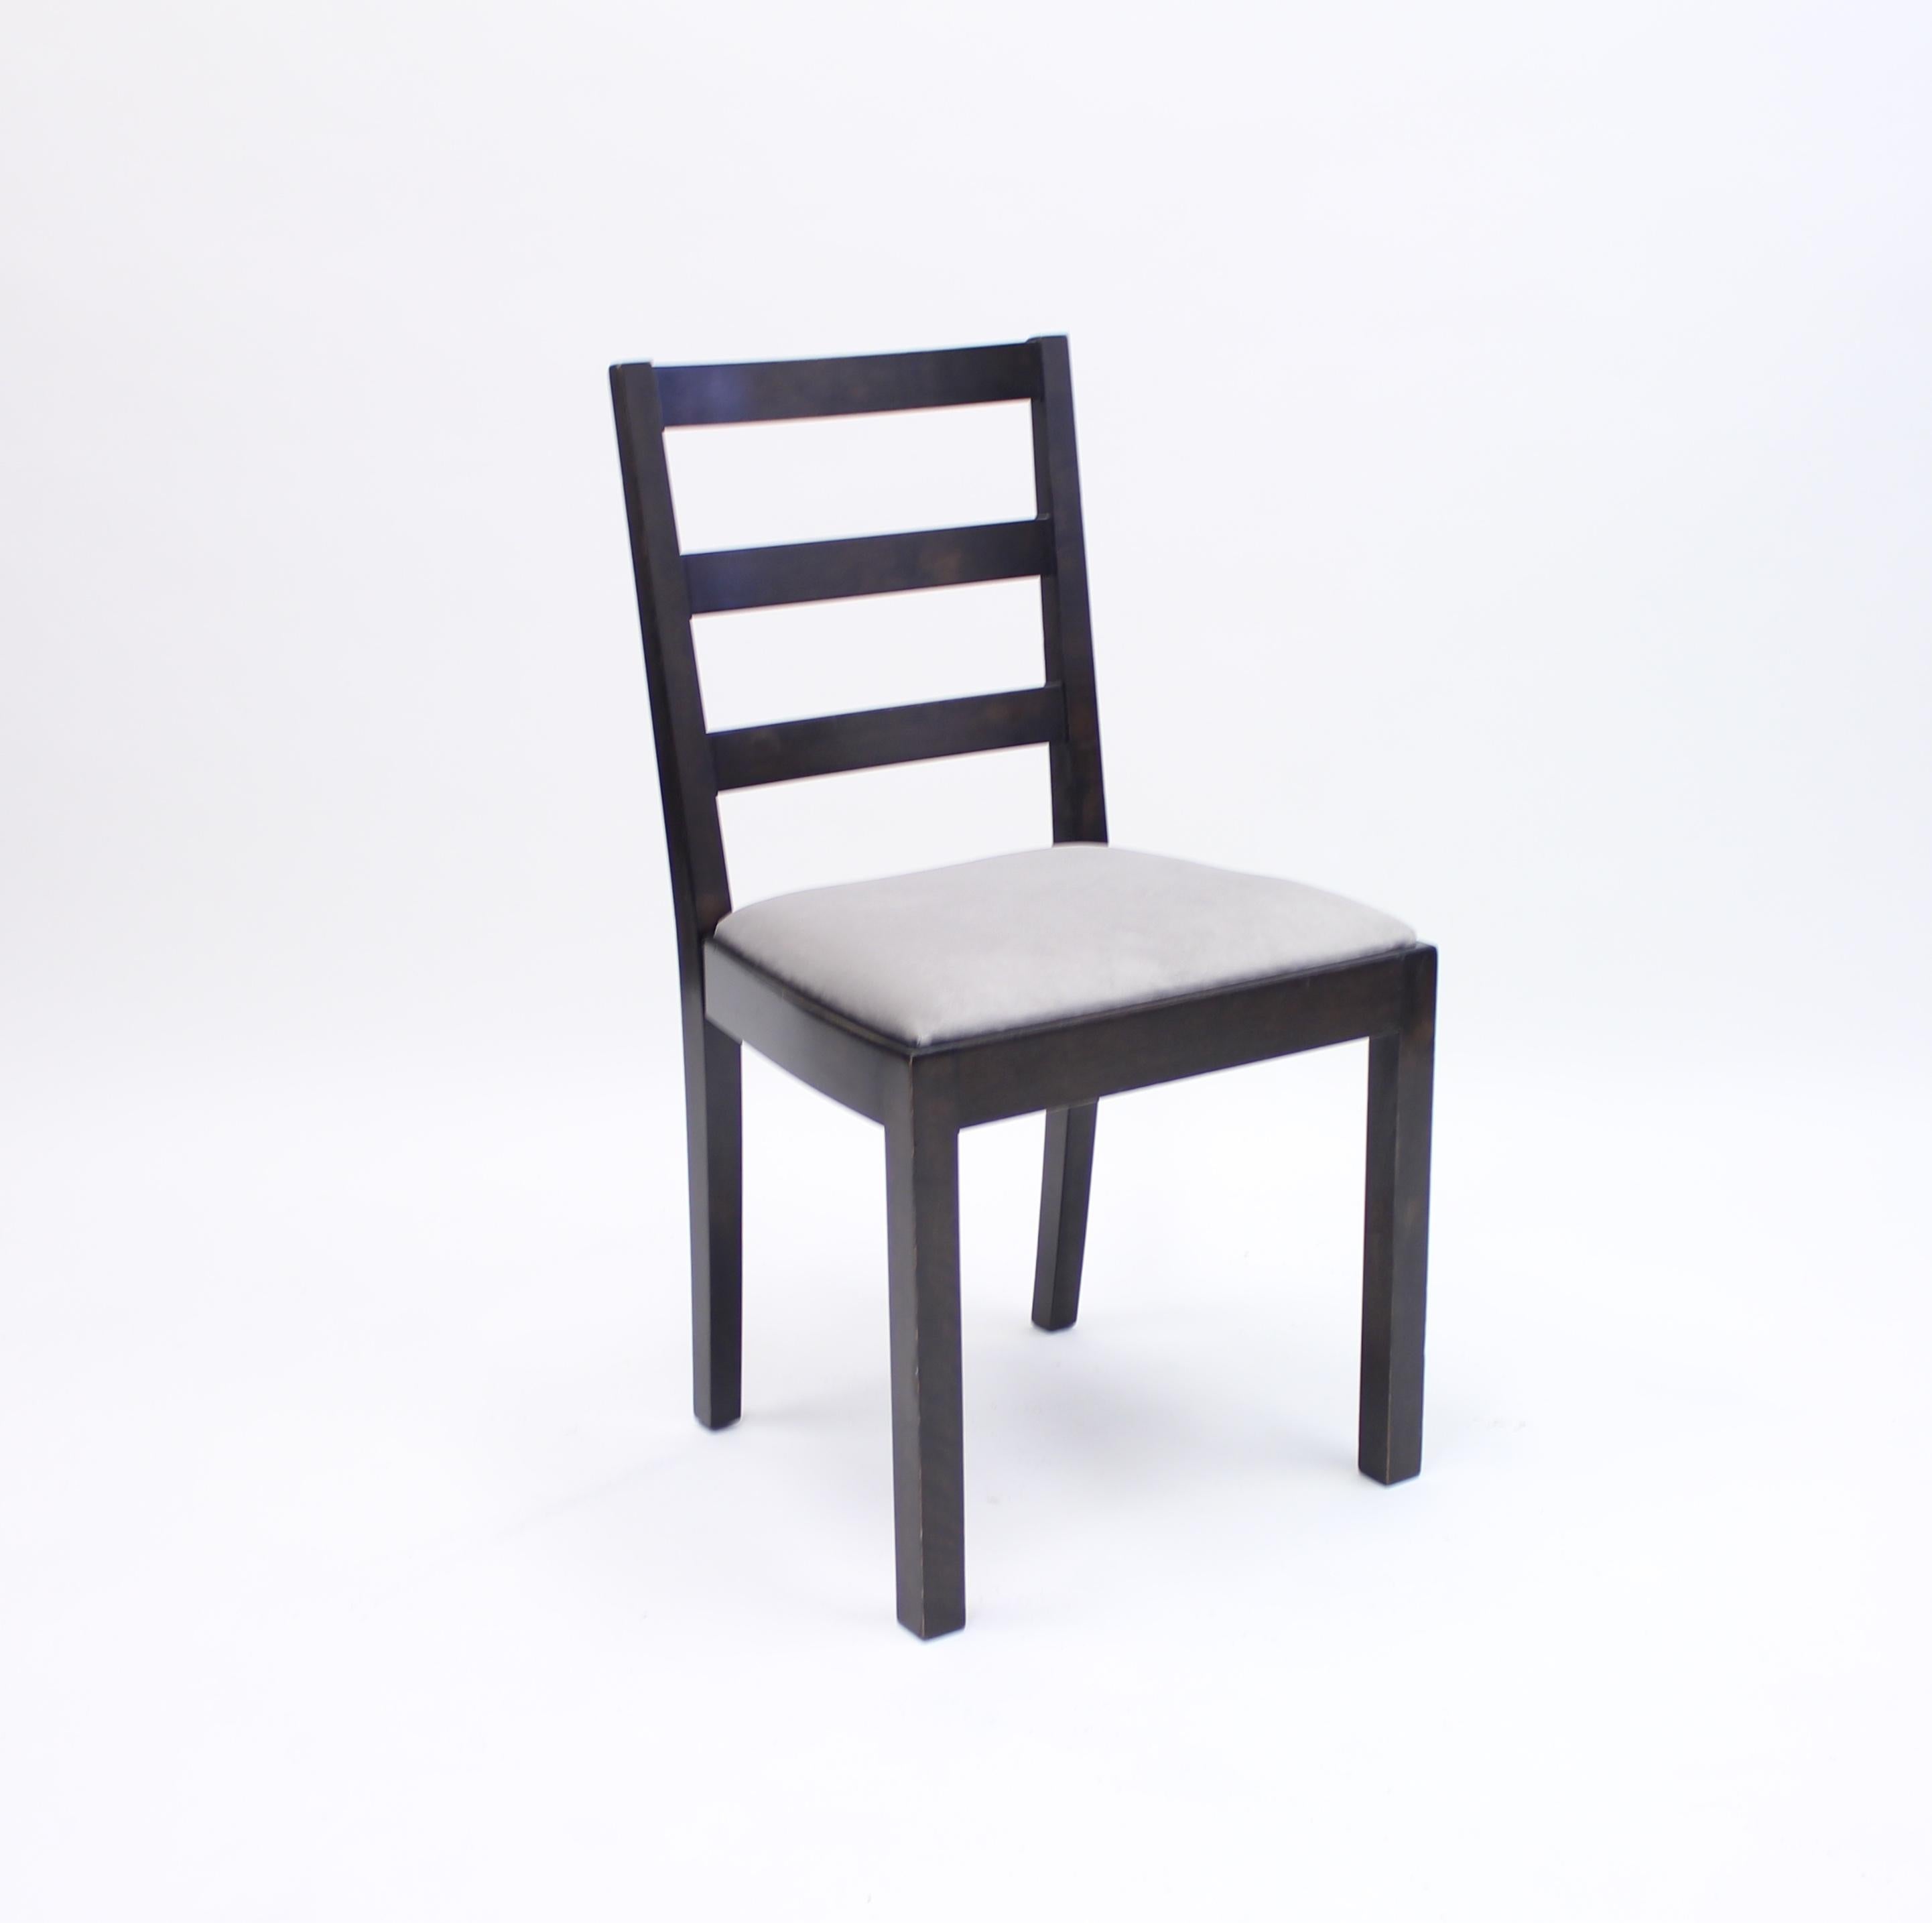 Velvet Typenko Chairs by Axel Einar Hjorth for Nordiska Kompaniet, 1930s, Set of 6